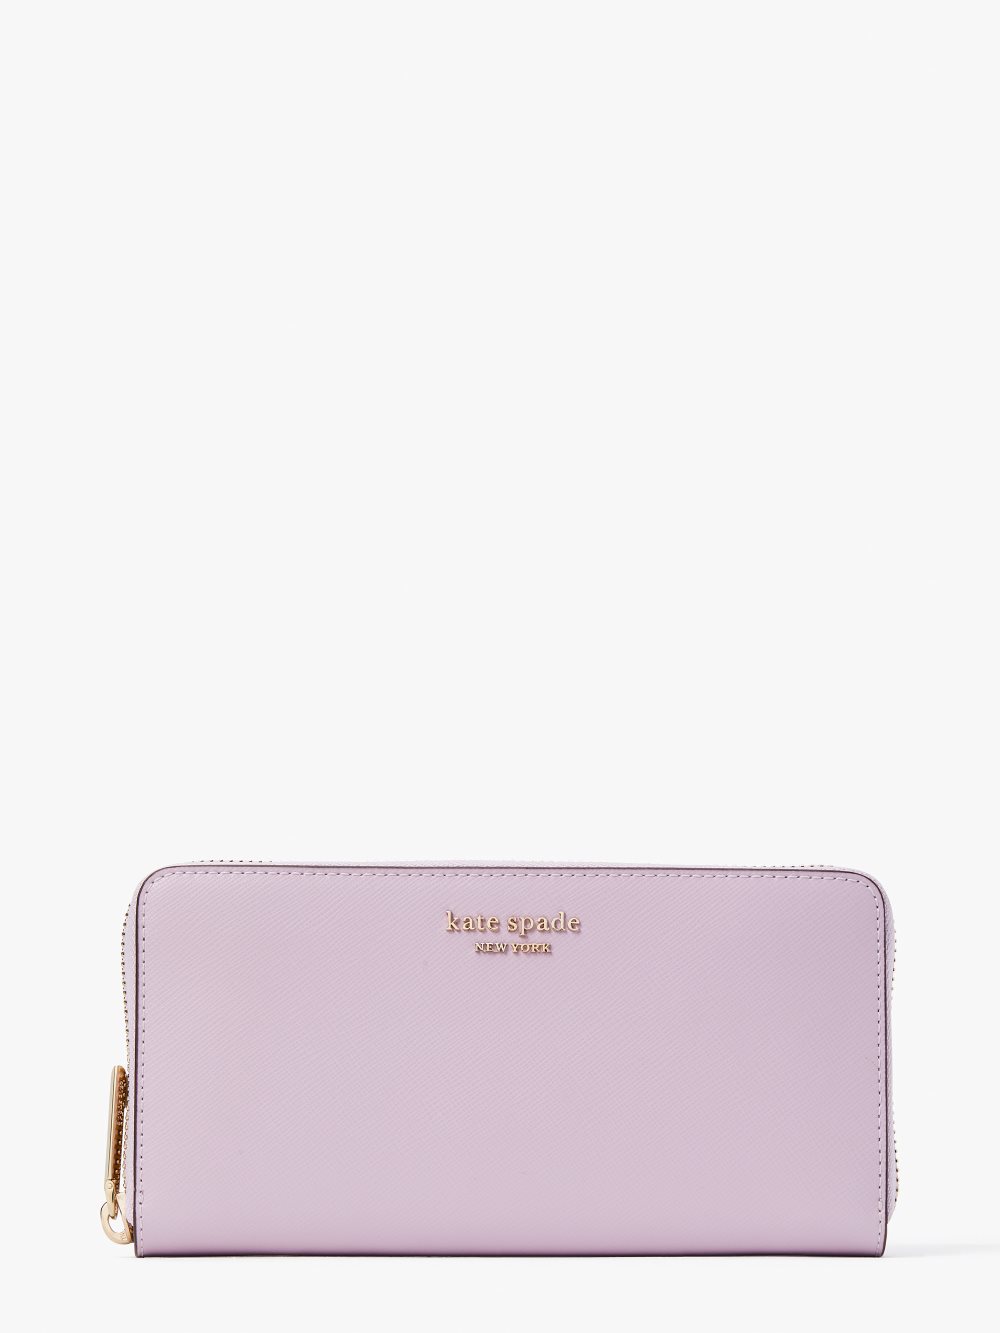 Women's violet mist spencer zip-around continental wallet | Kate Spade